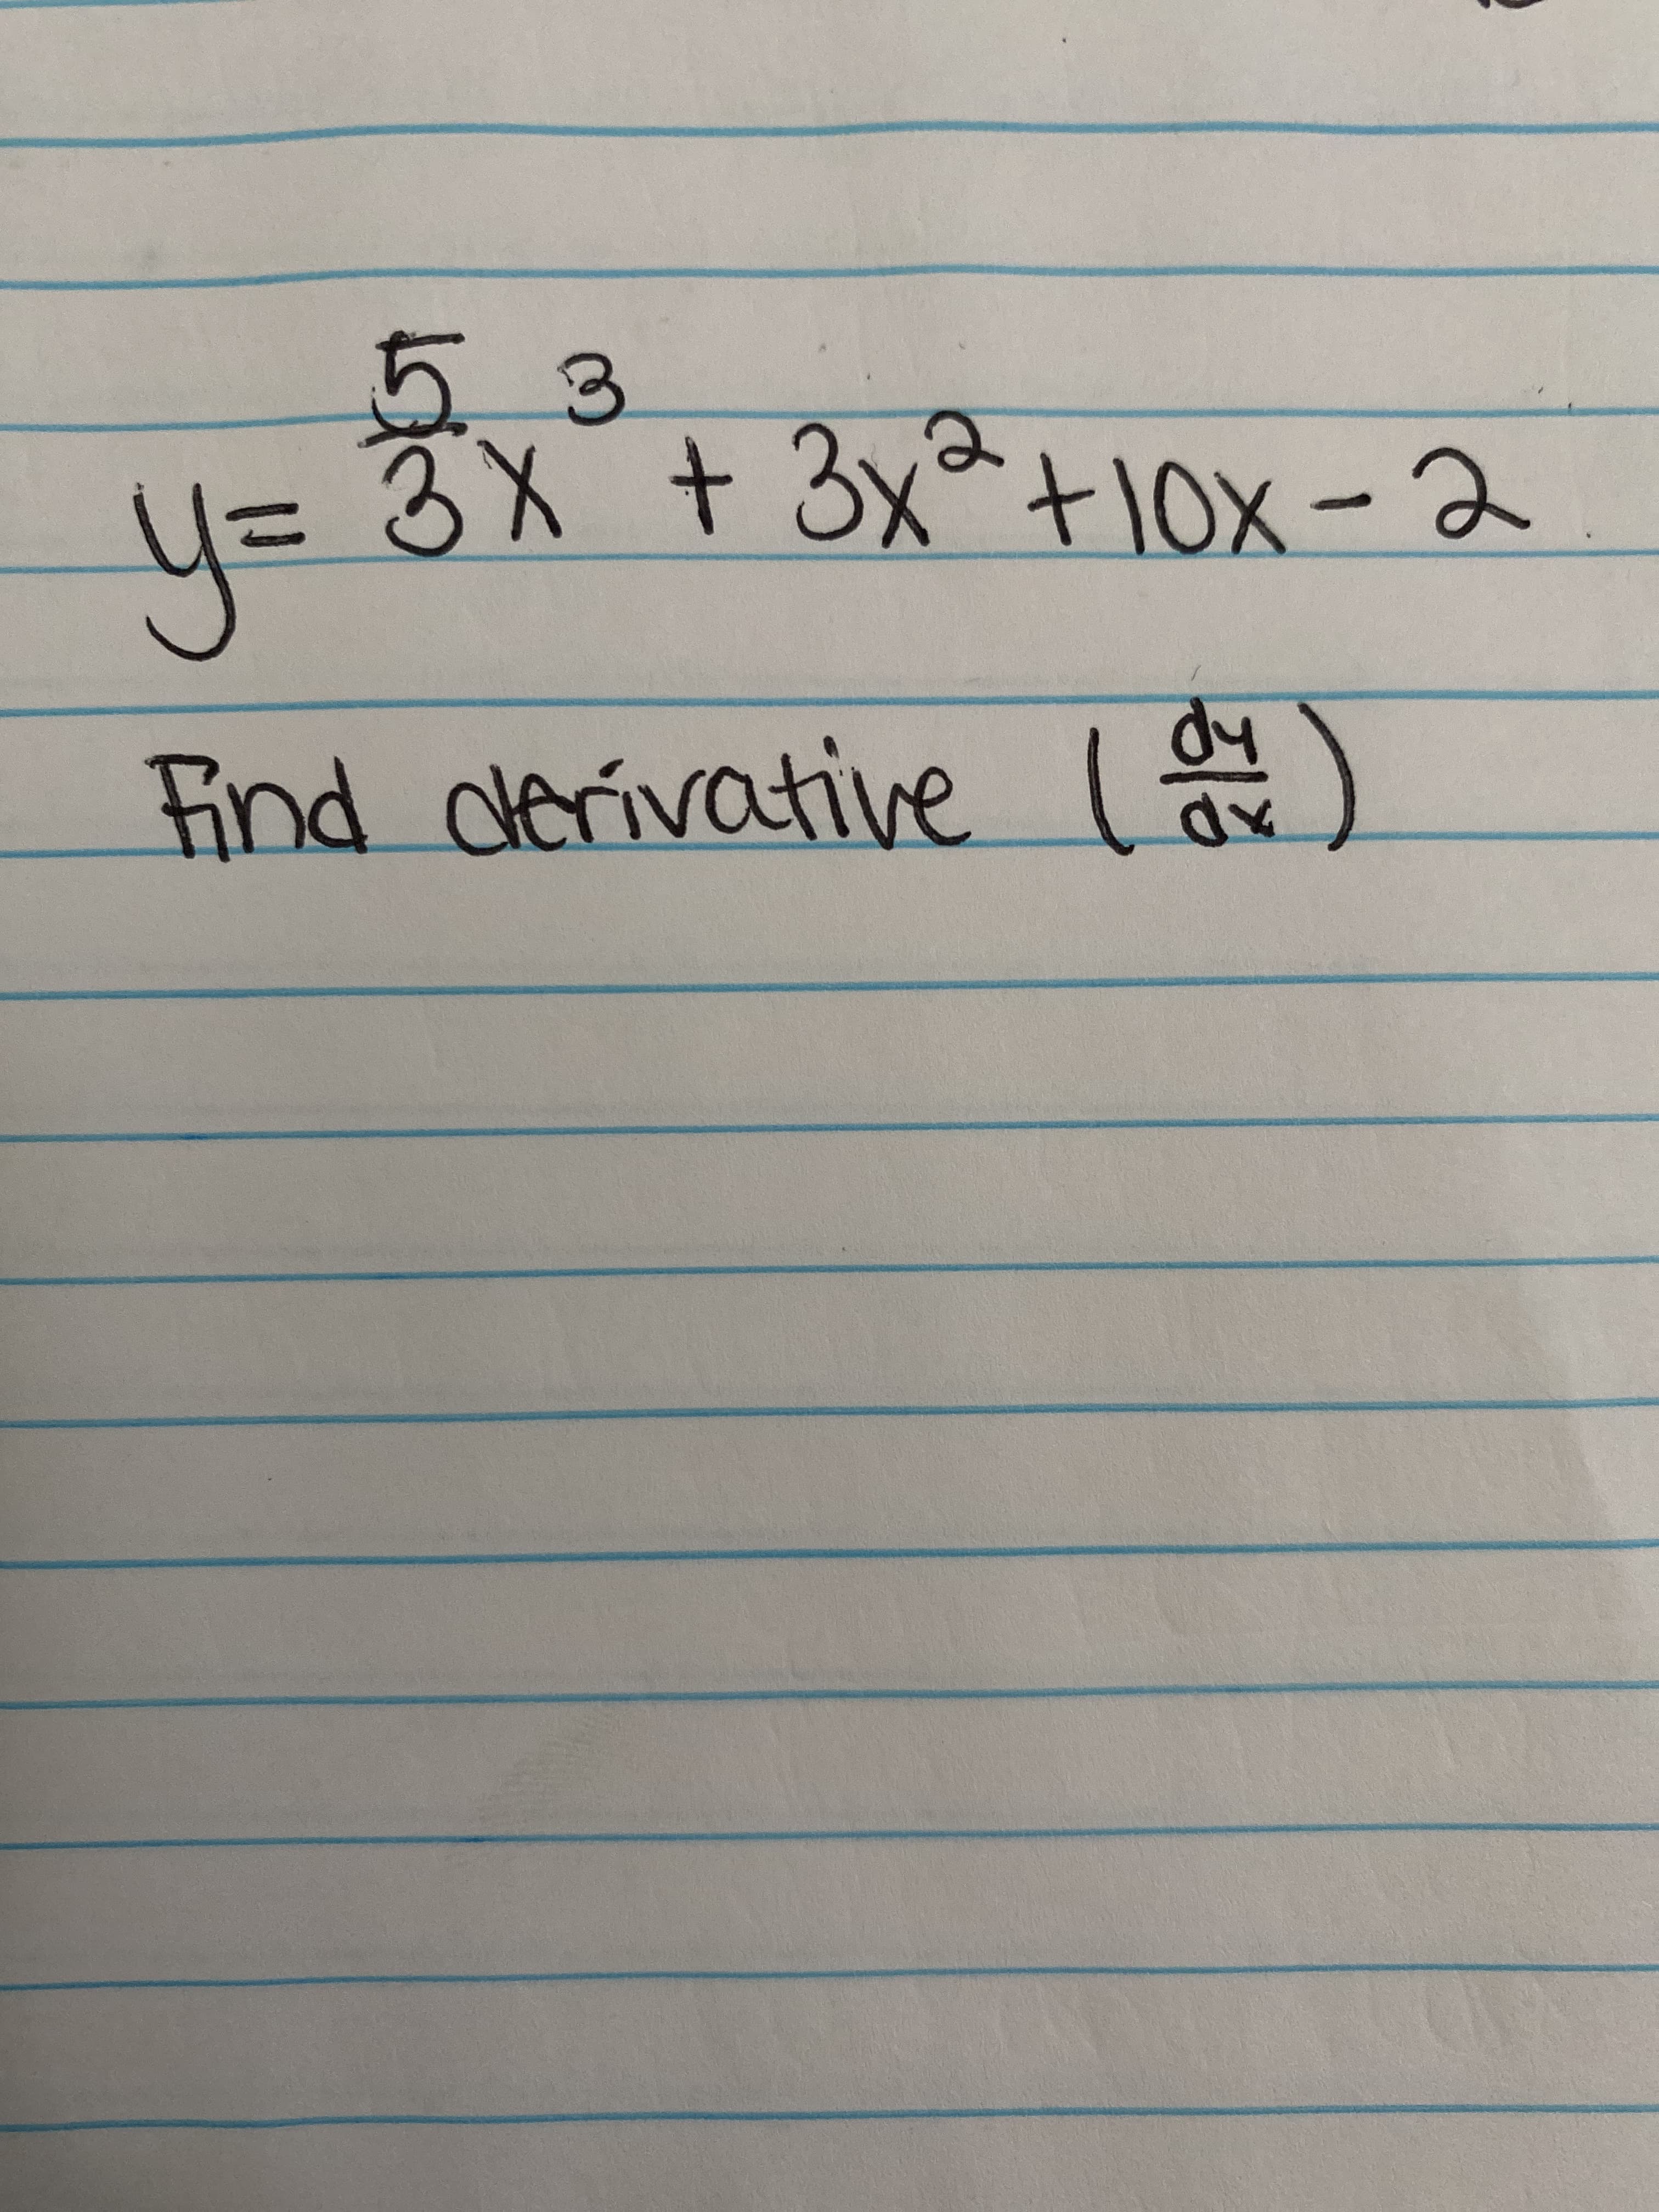 53
u= 8X + 3x^+Iox – Ə
2)
- 2
y=
Find derivative )
